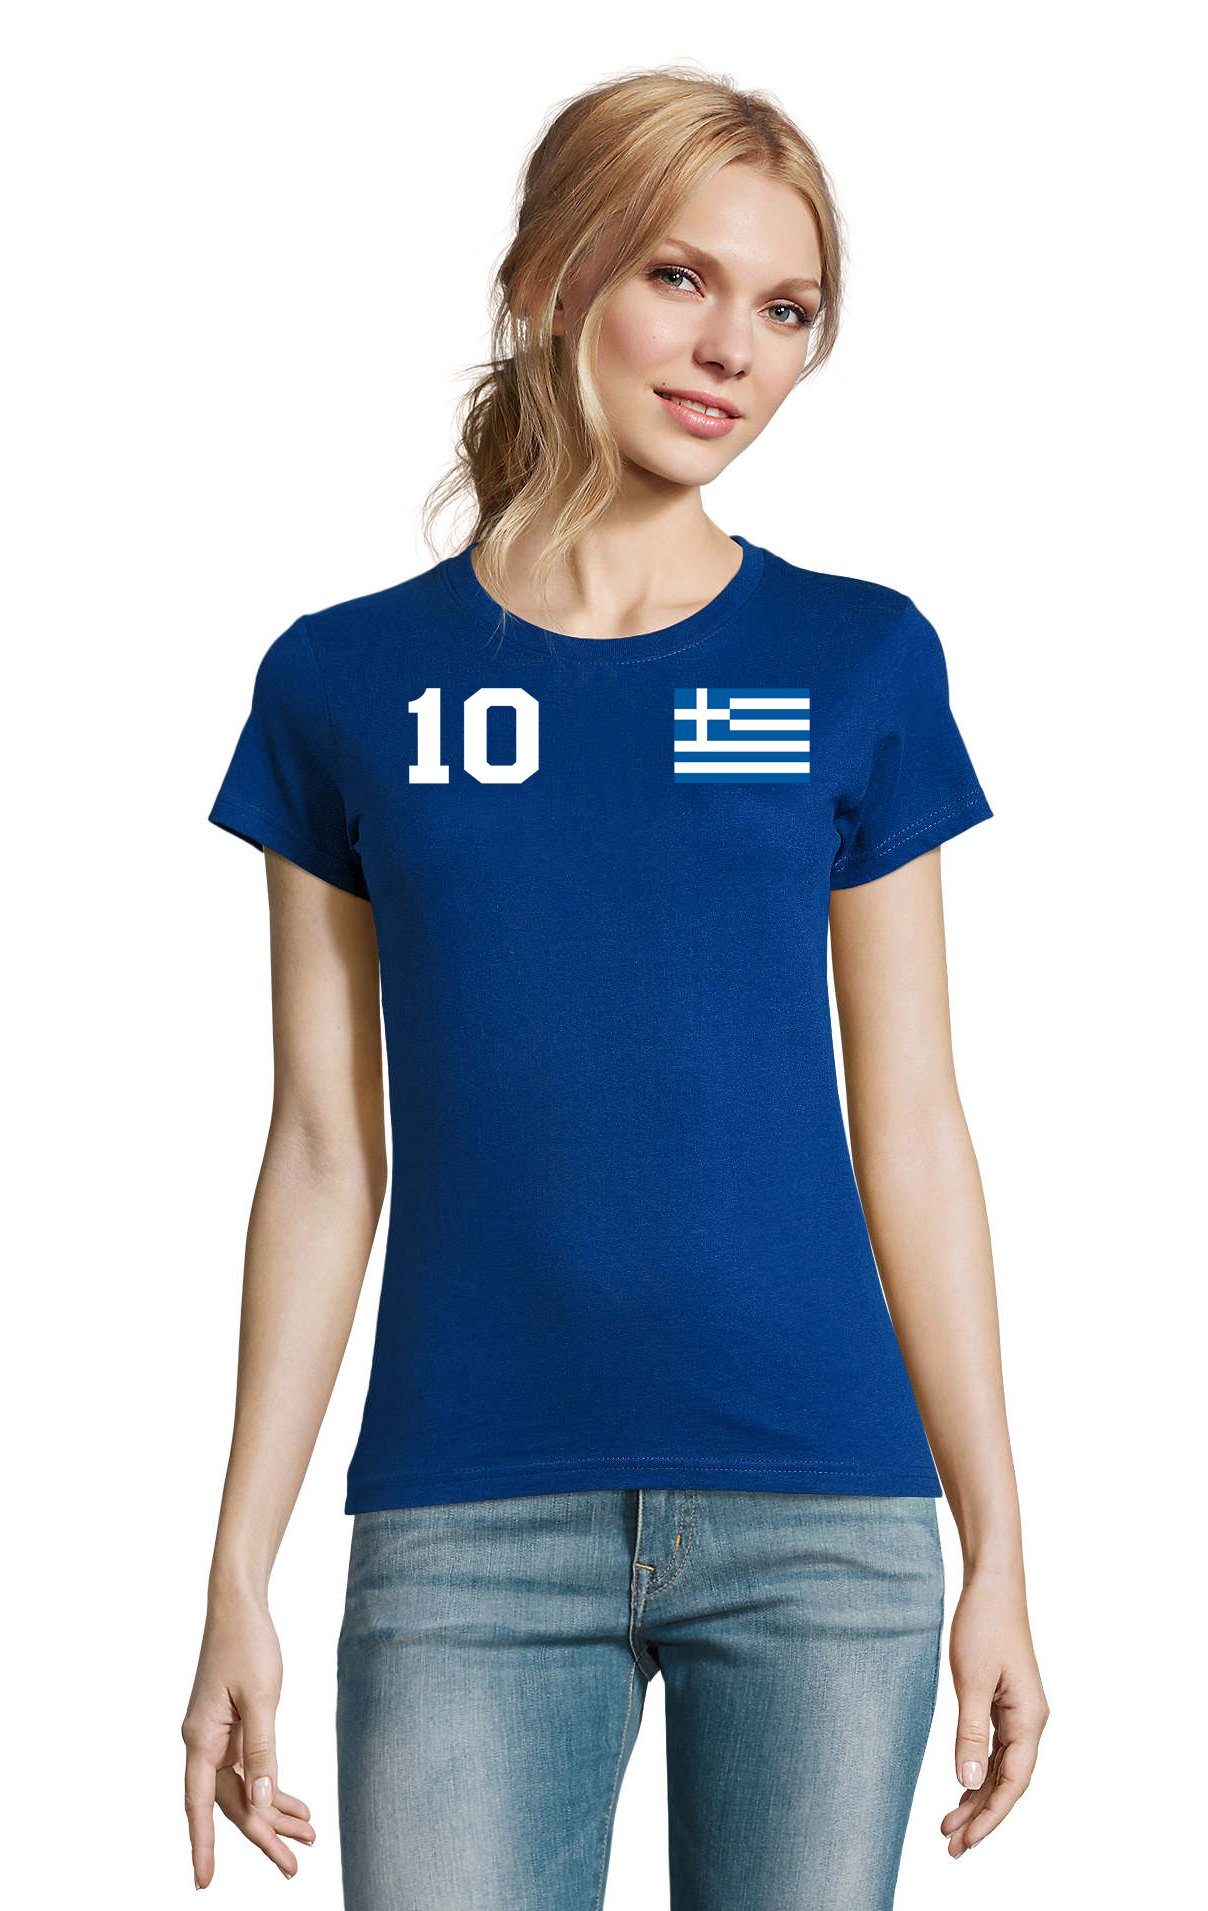 Blondie & Brownie T-Shirt Damen Griechenland Sport Trikot Fußball Handball Weltmeister EM